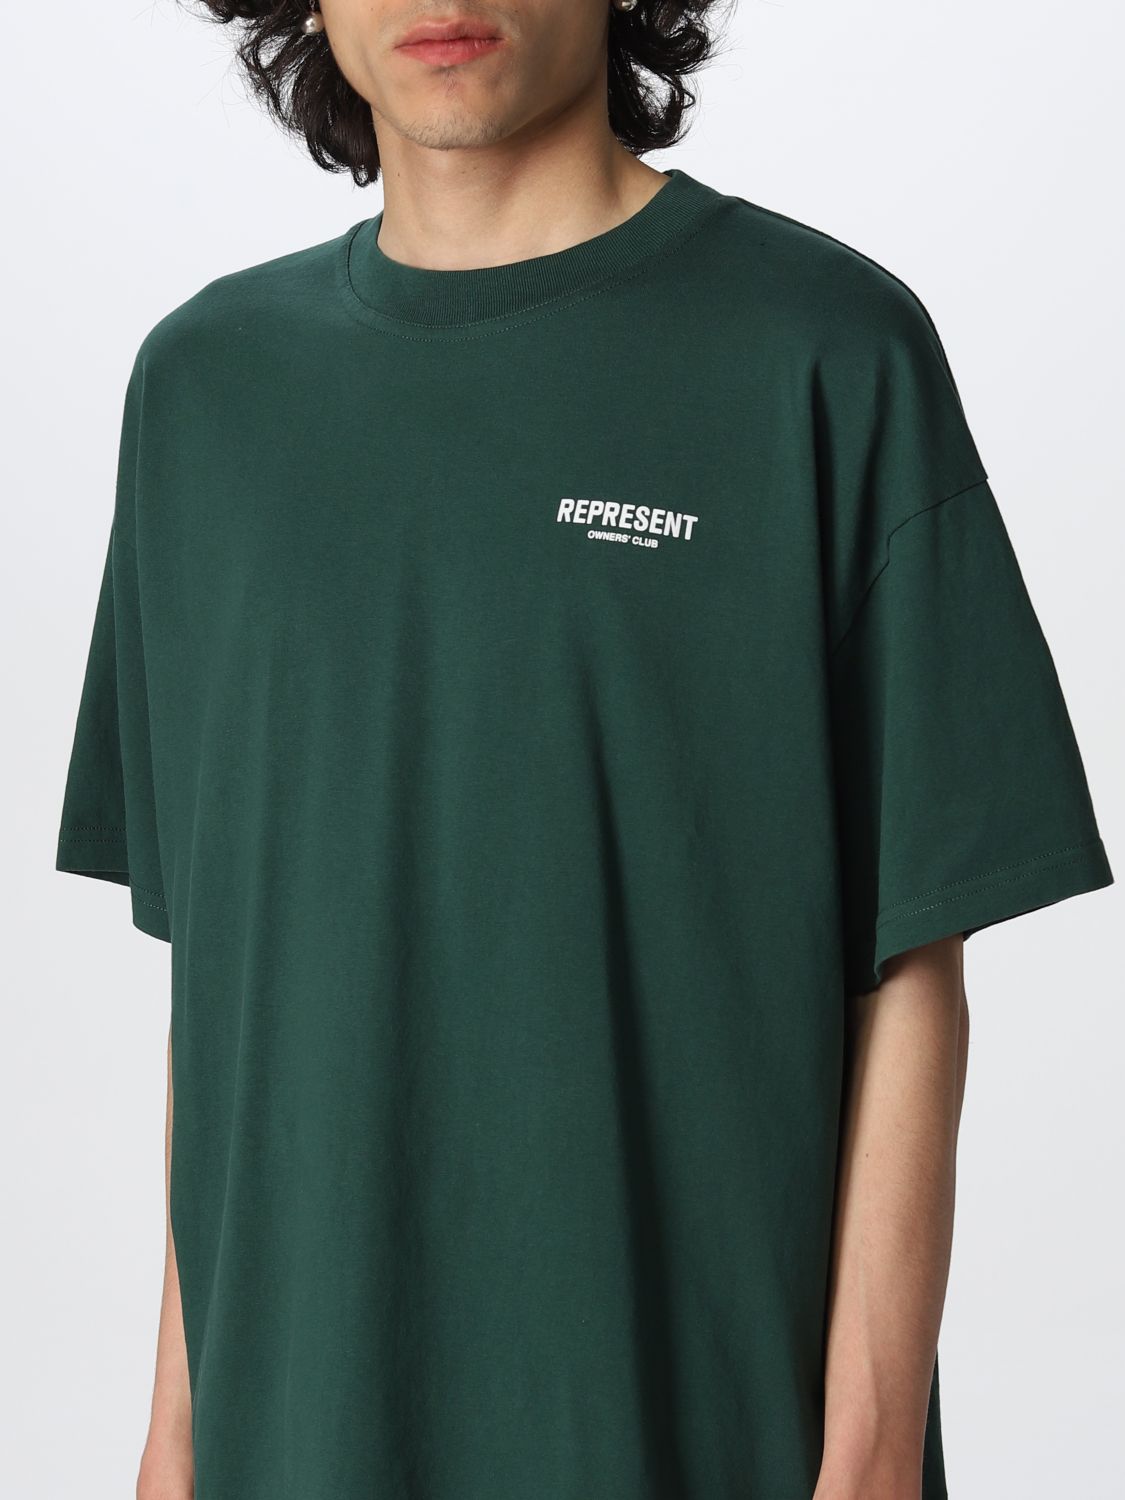 T-Shirt Represent: T-shirt herren Represent grün 3